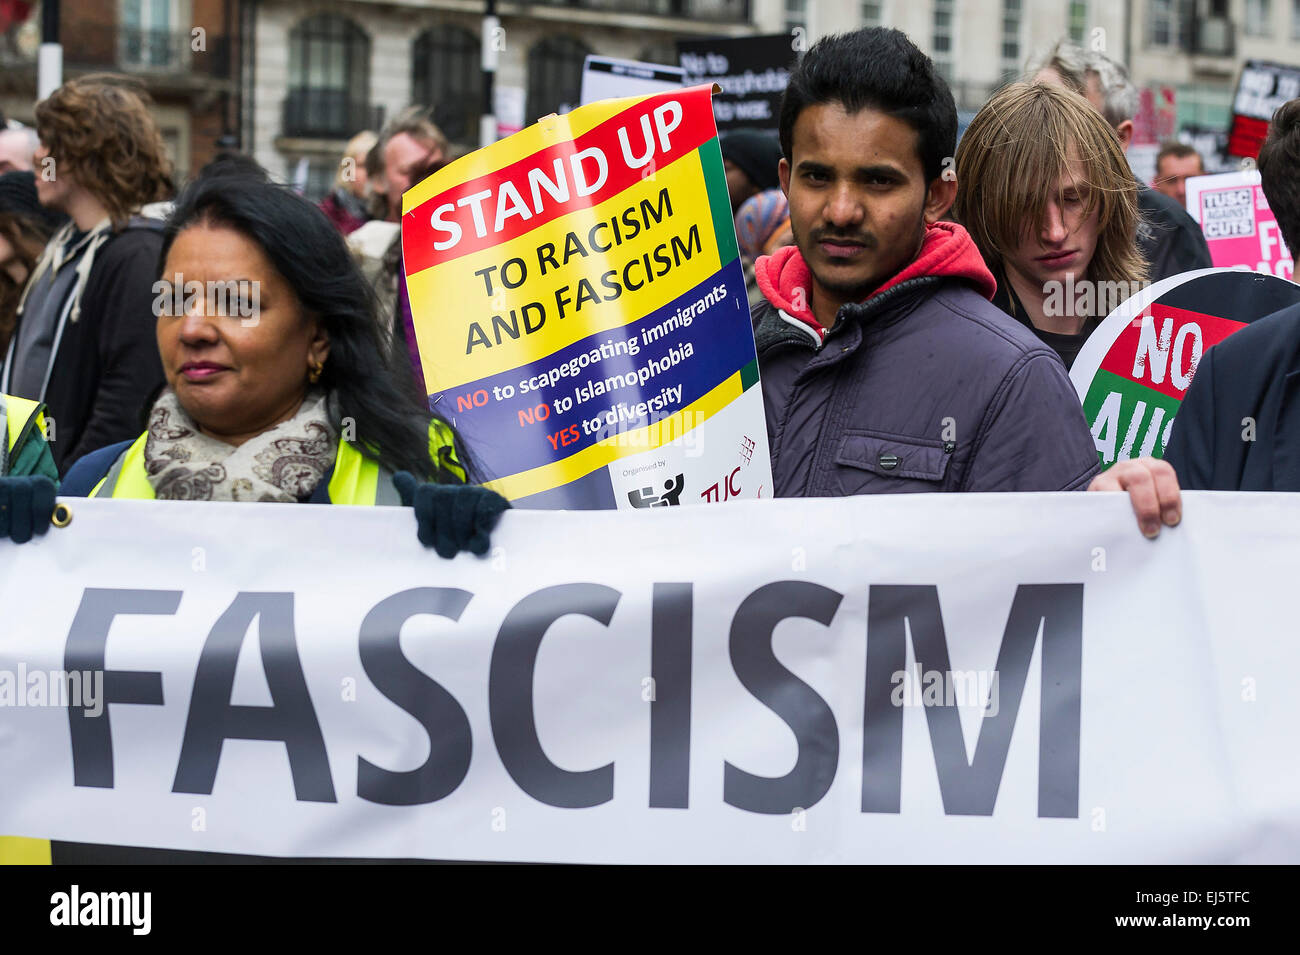 Una manifestación nacional contra el racismo y el fascismo organizado por levantarse al racismo. Foto de stock